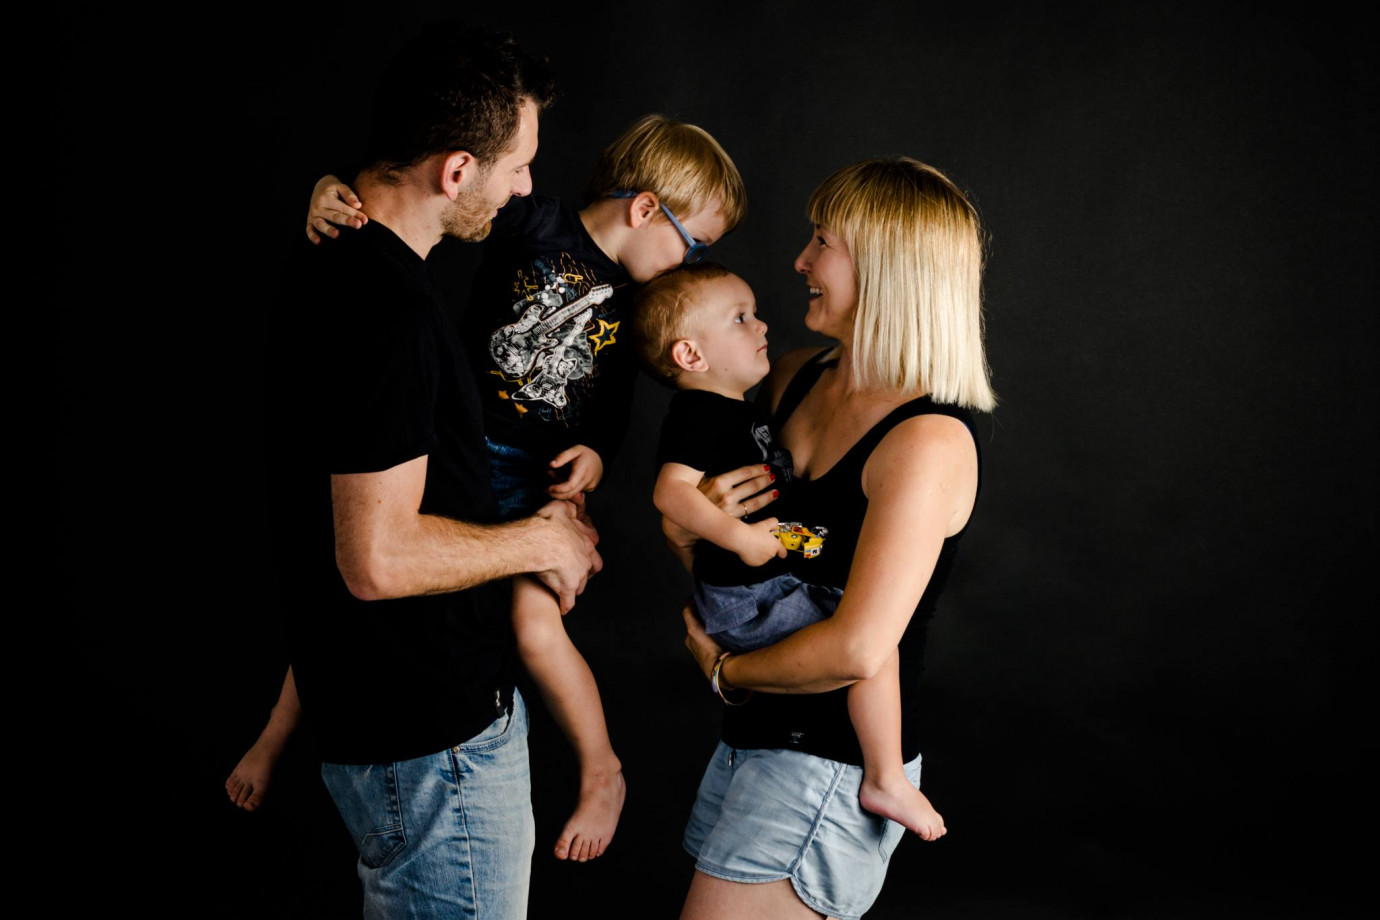 fotograf torun fotografia-alicja-trojnar portfolio zdjecia rodzinne fotografia rodzinna sesja